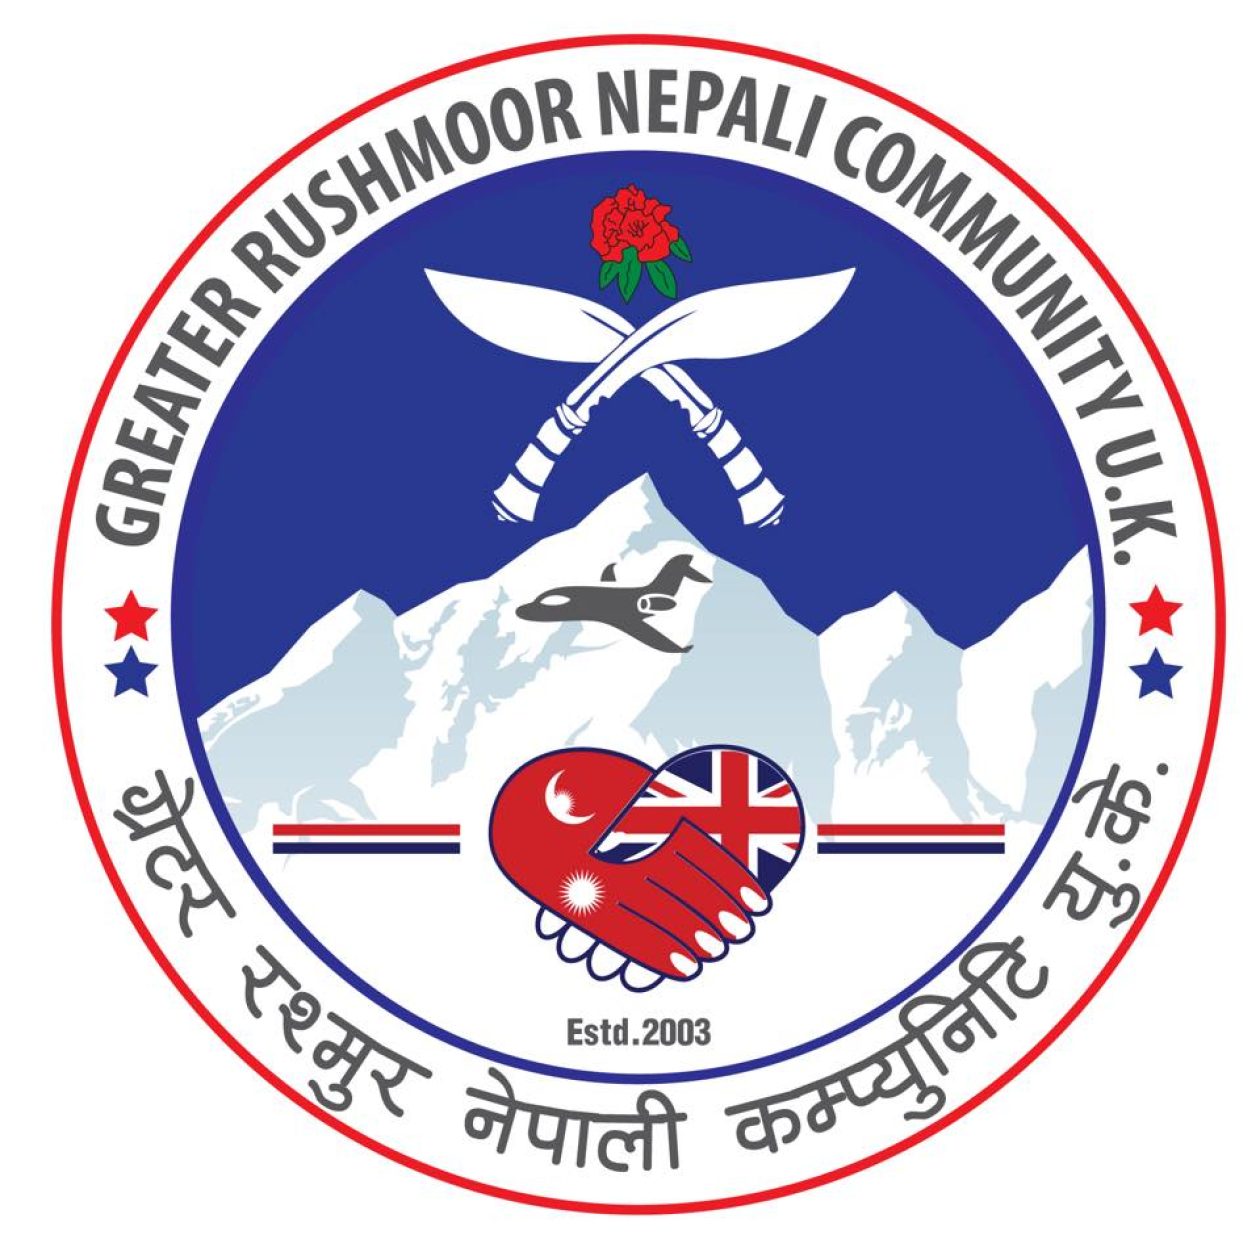 Greater Rushmoor Nepali Community(GRNC)